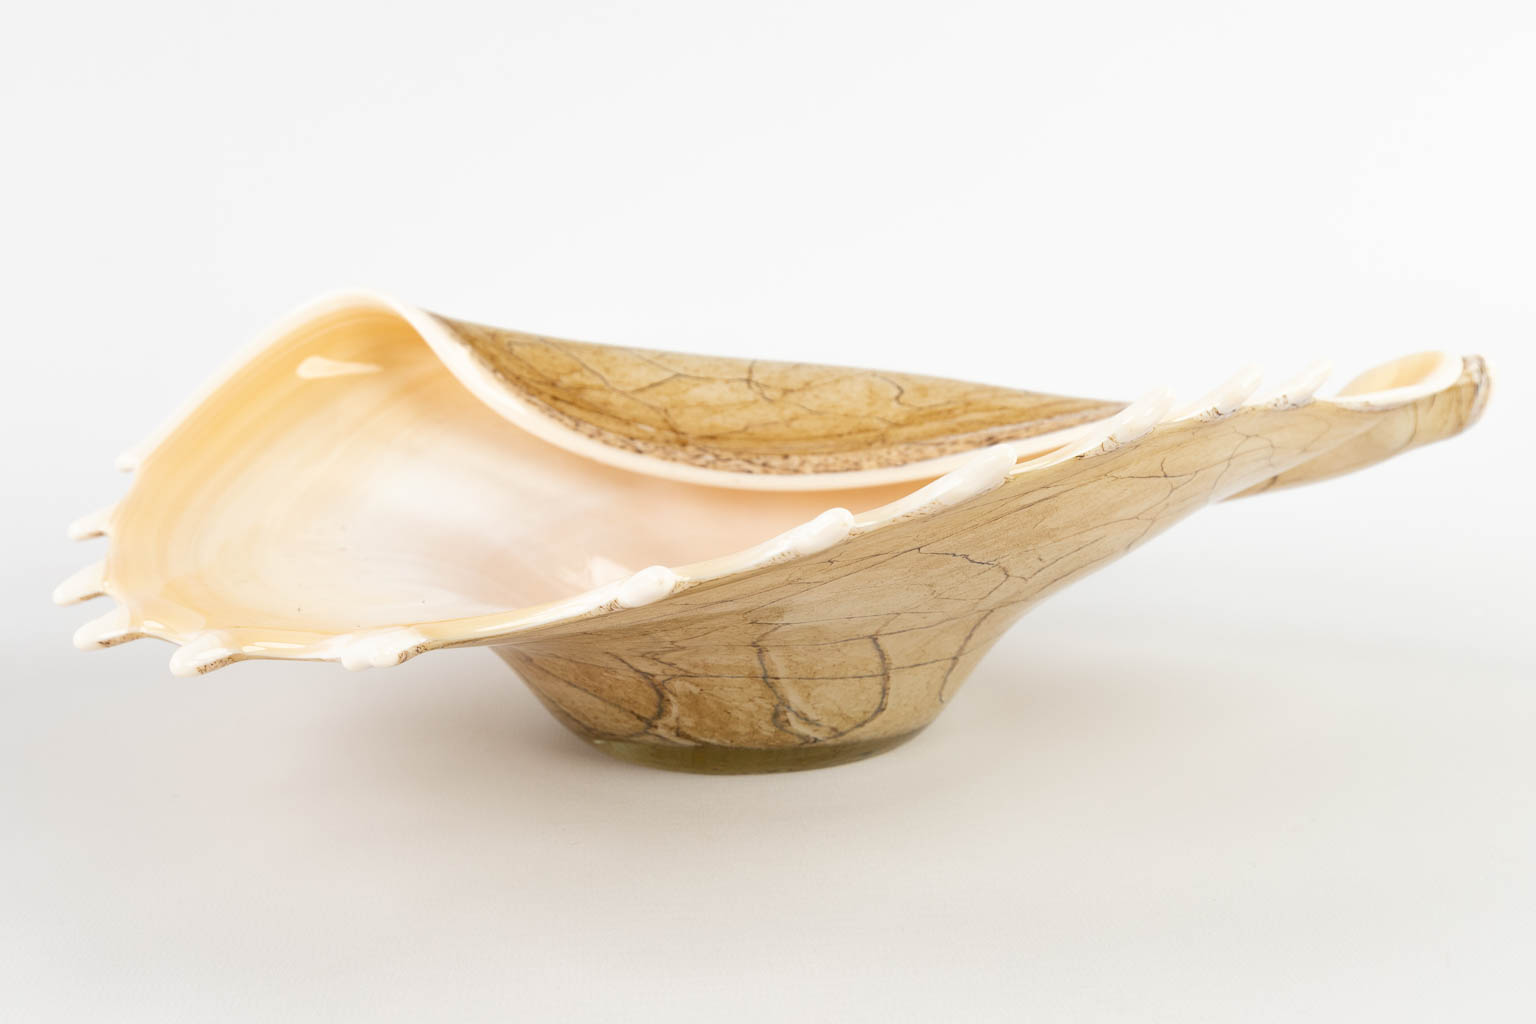 Twee stuks kunstglas, een schelp en een schaal, Murano, Italië. (D:23 x W:34 x H:9,5 cm)